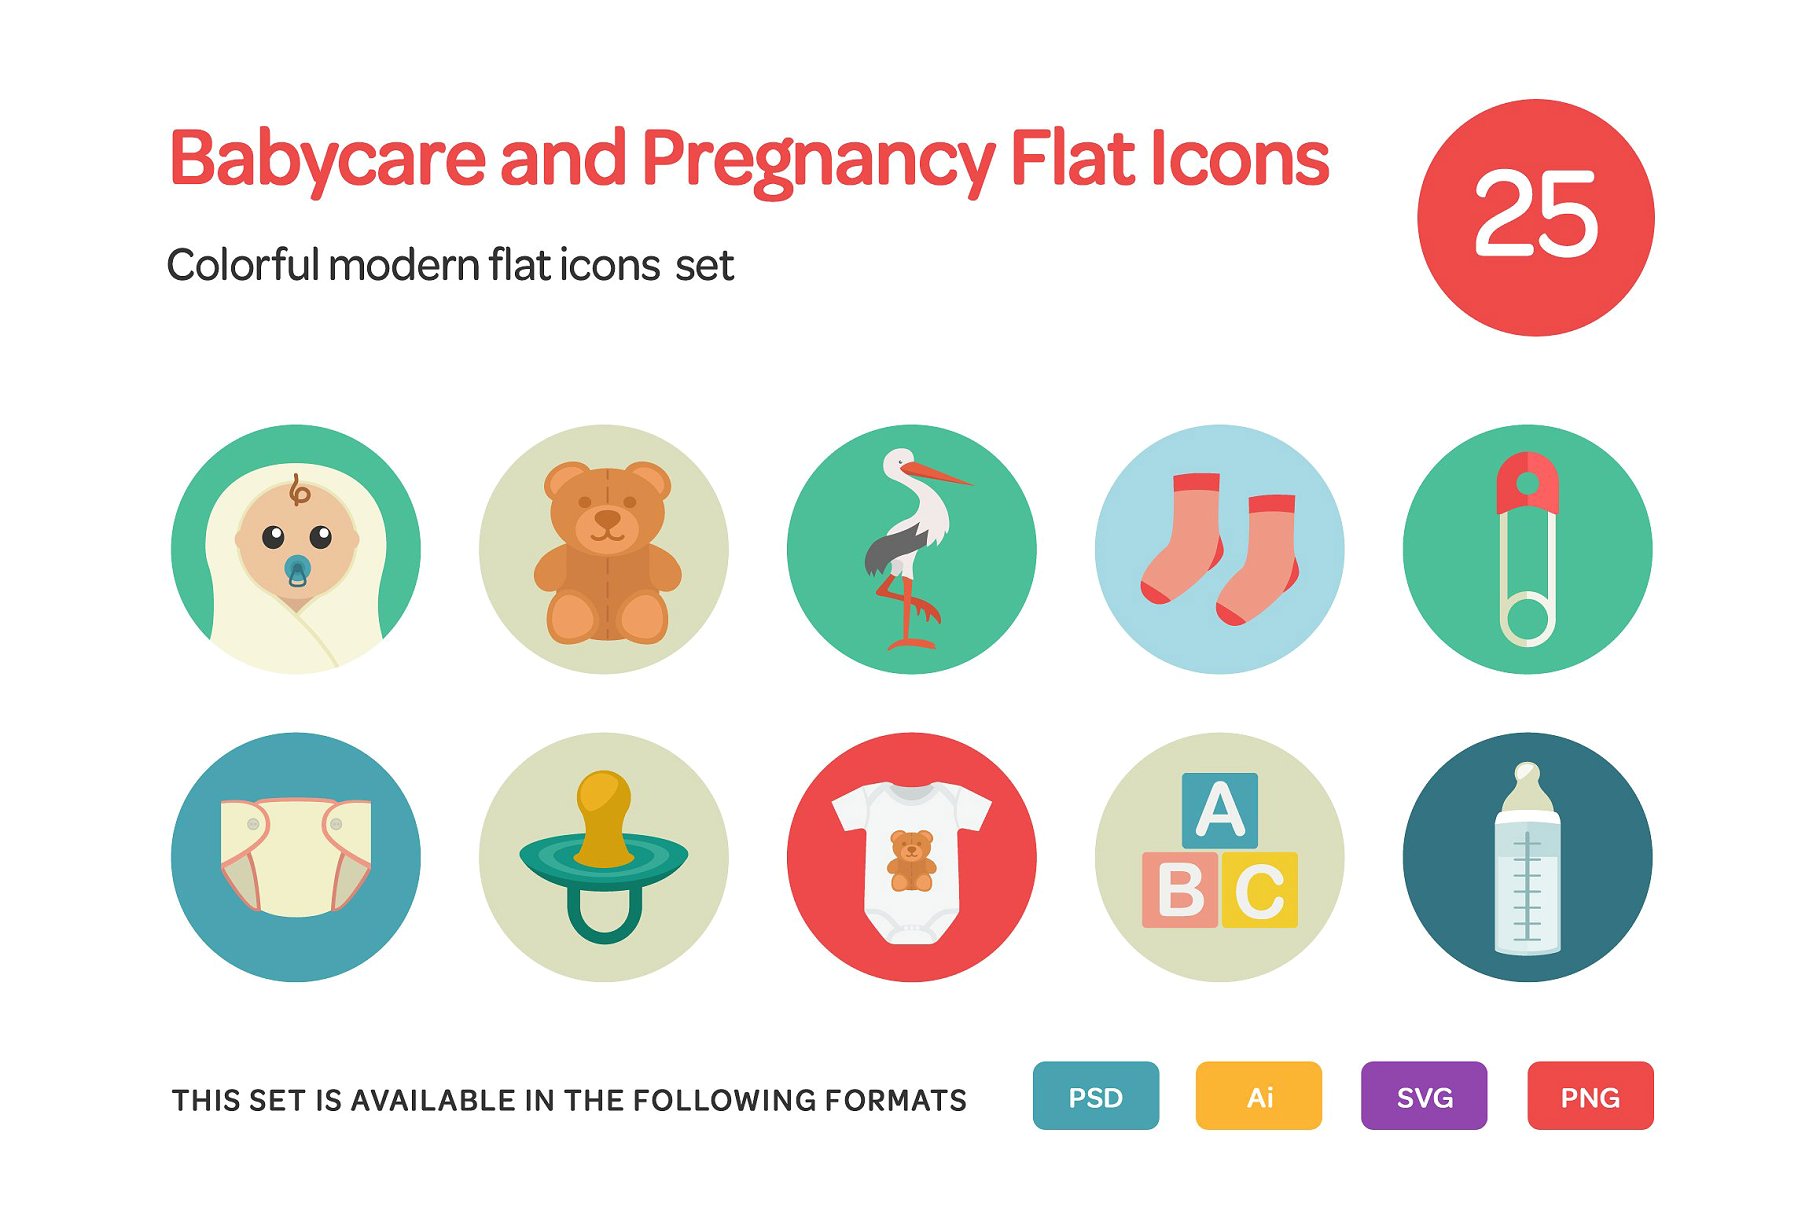 婴儿护理和怀孕平面图标下载 Babycare and Pre